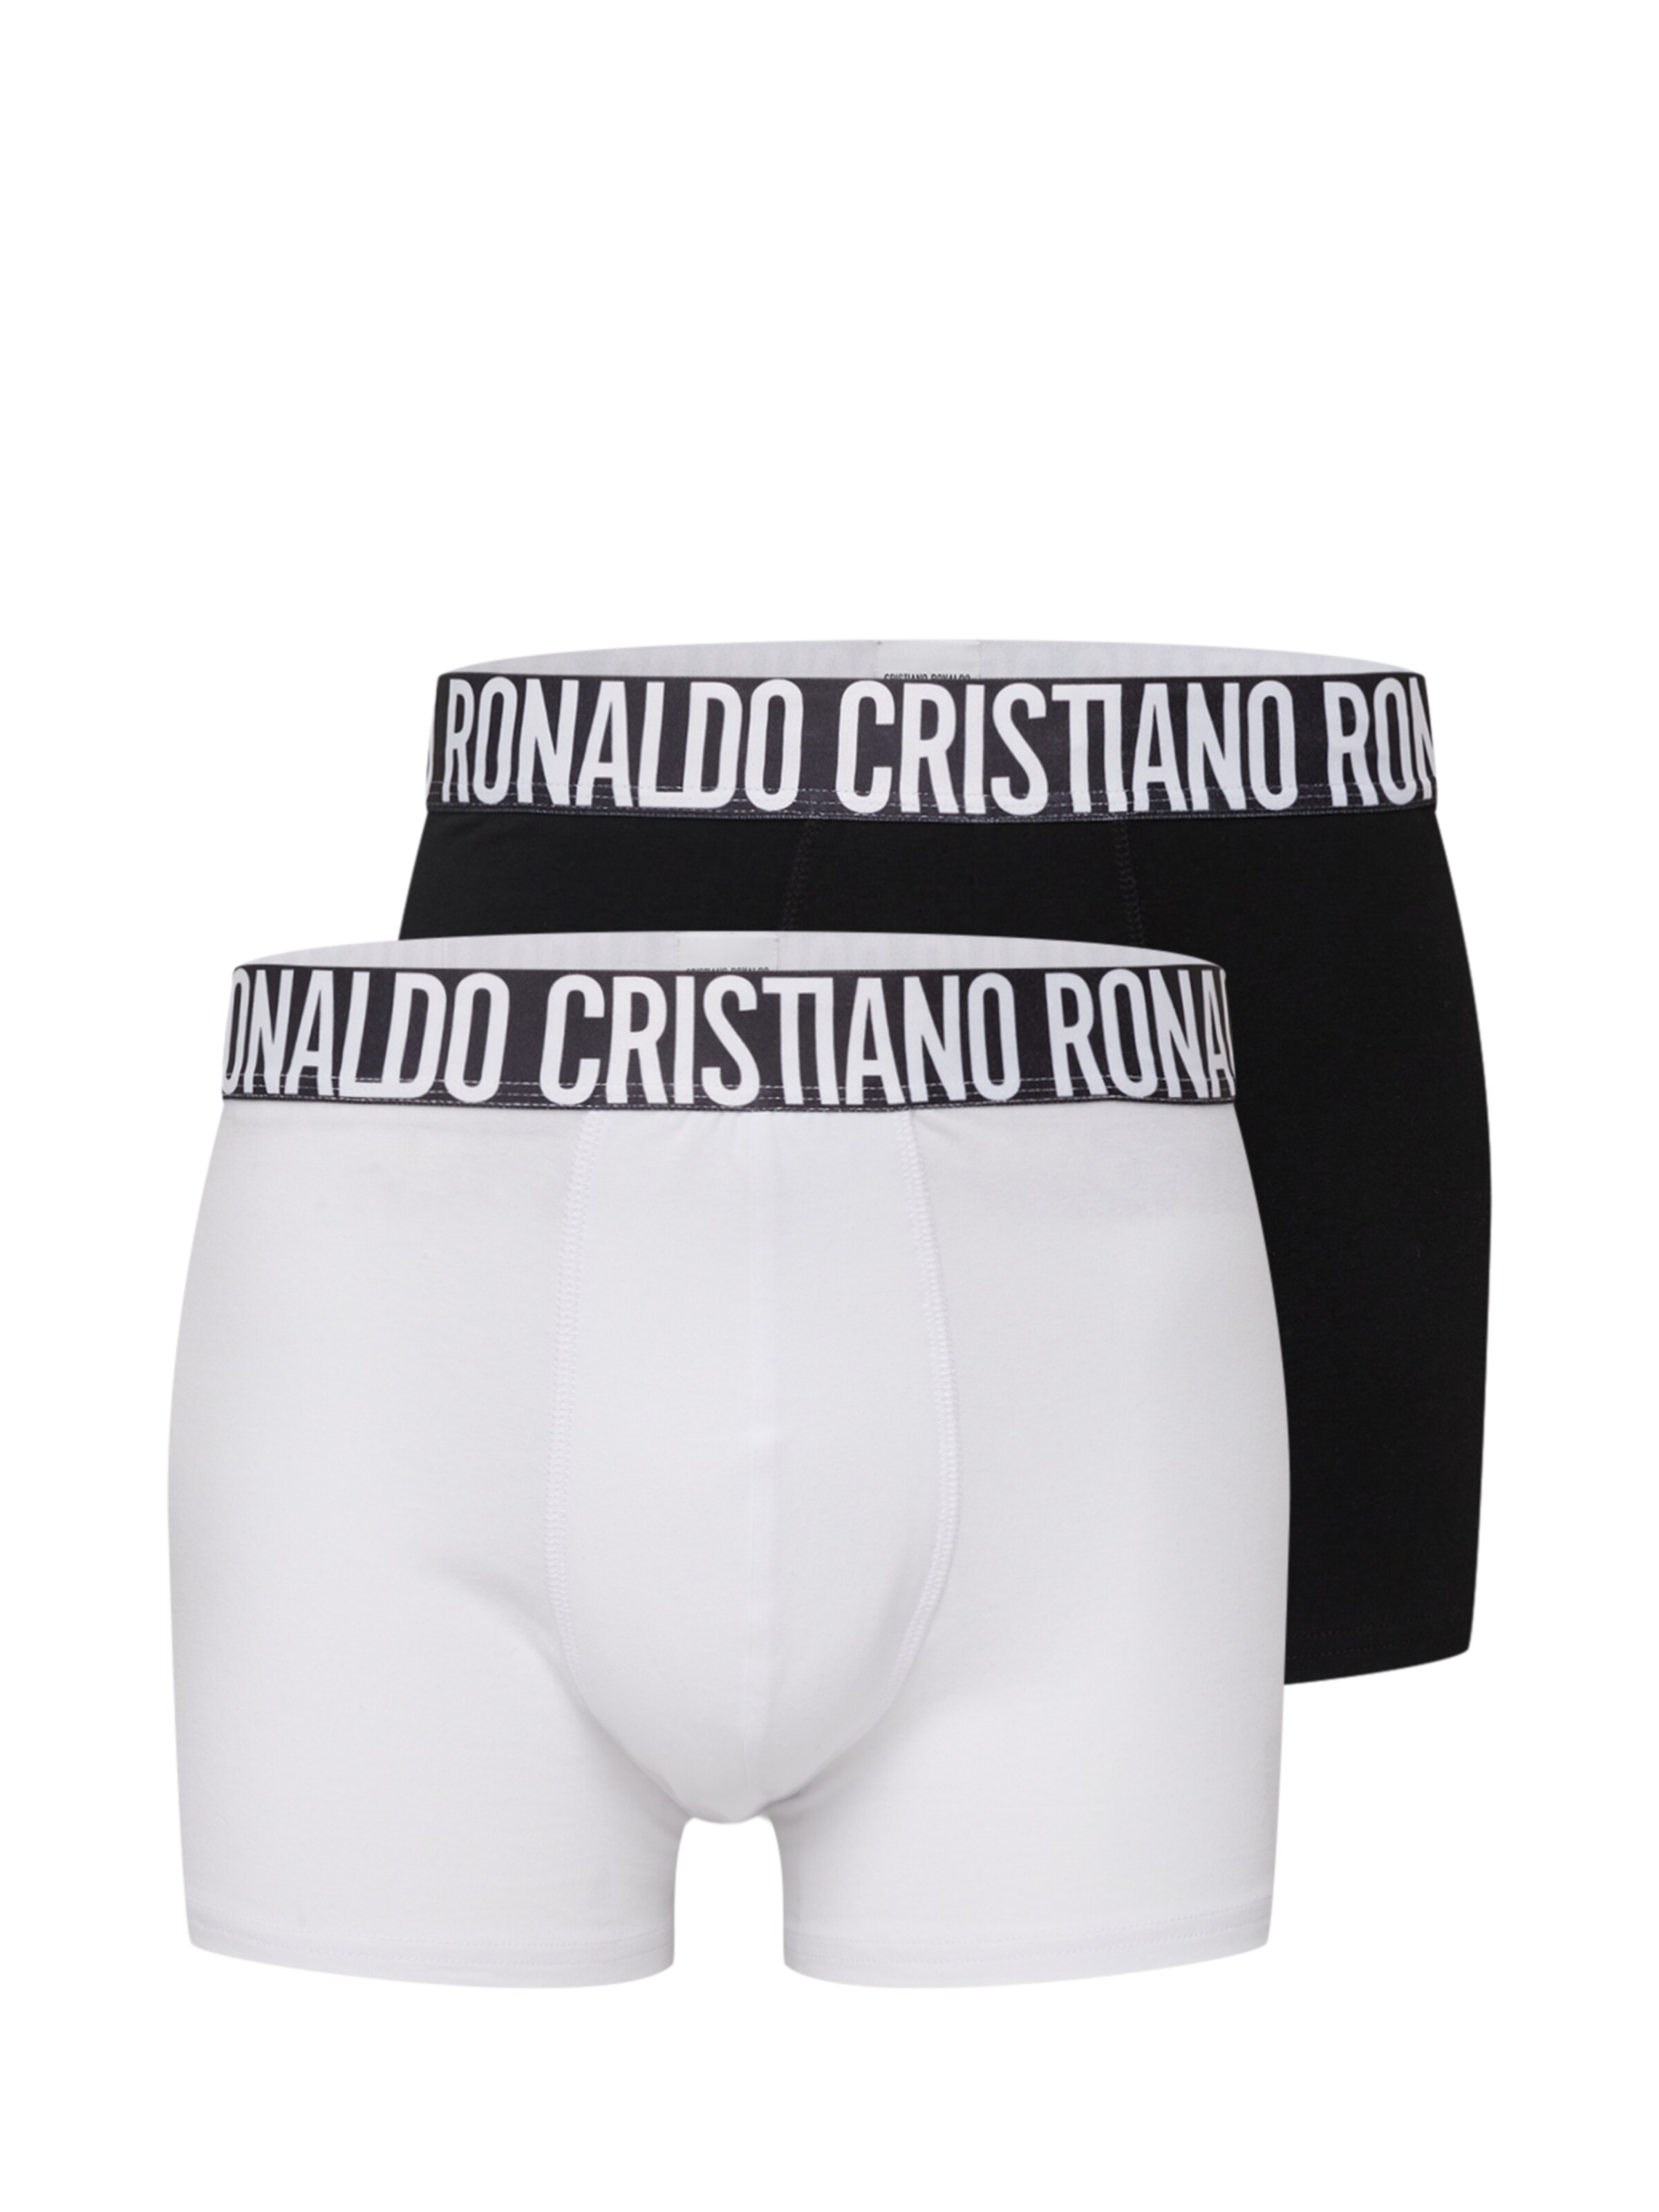 Männer Wäsche CR7 - Cristiano Ronaldo Boxershorts in Schwarz, Weiß - LU91447